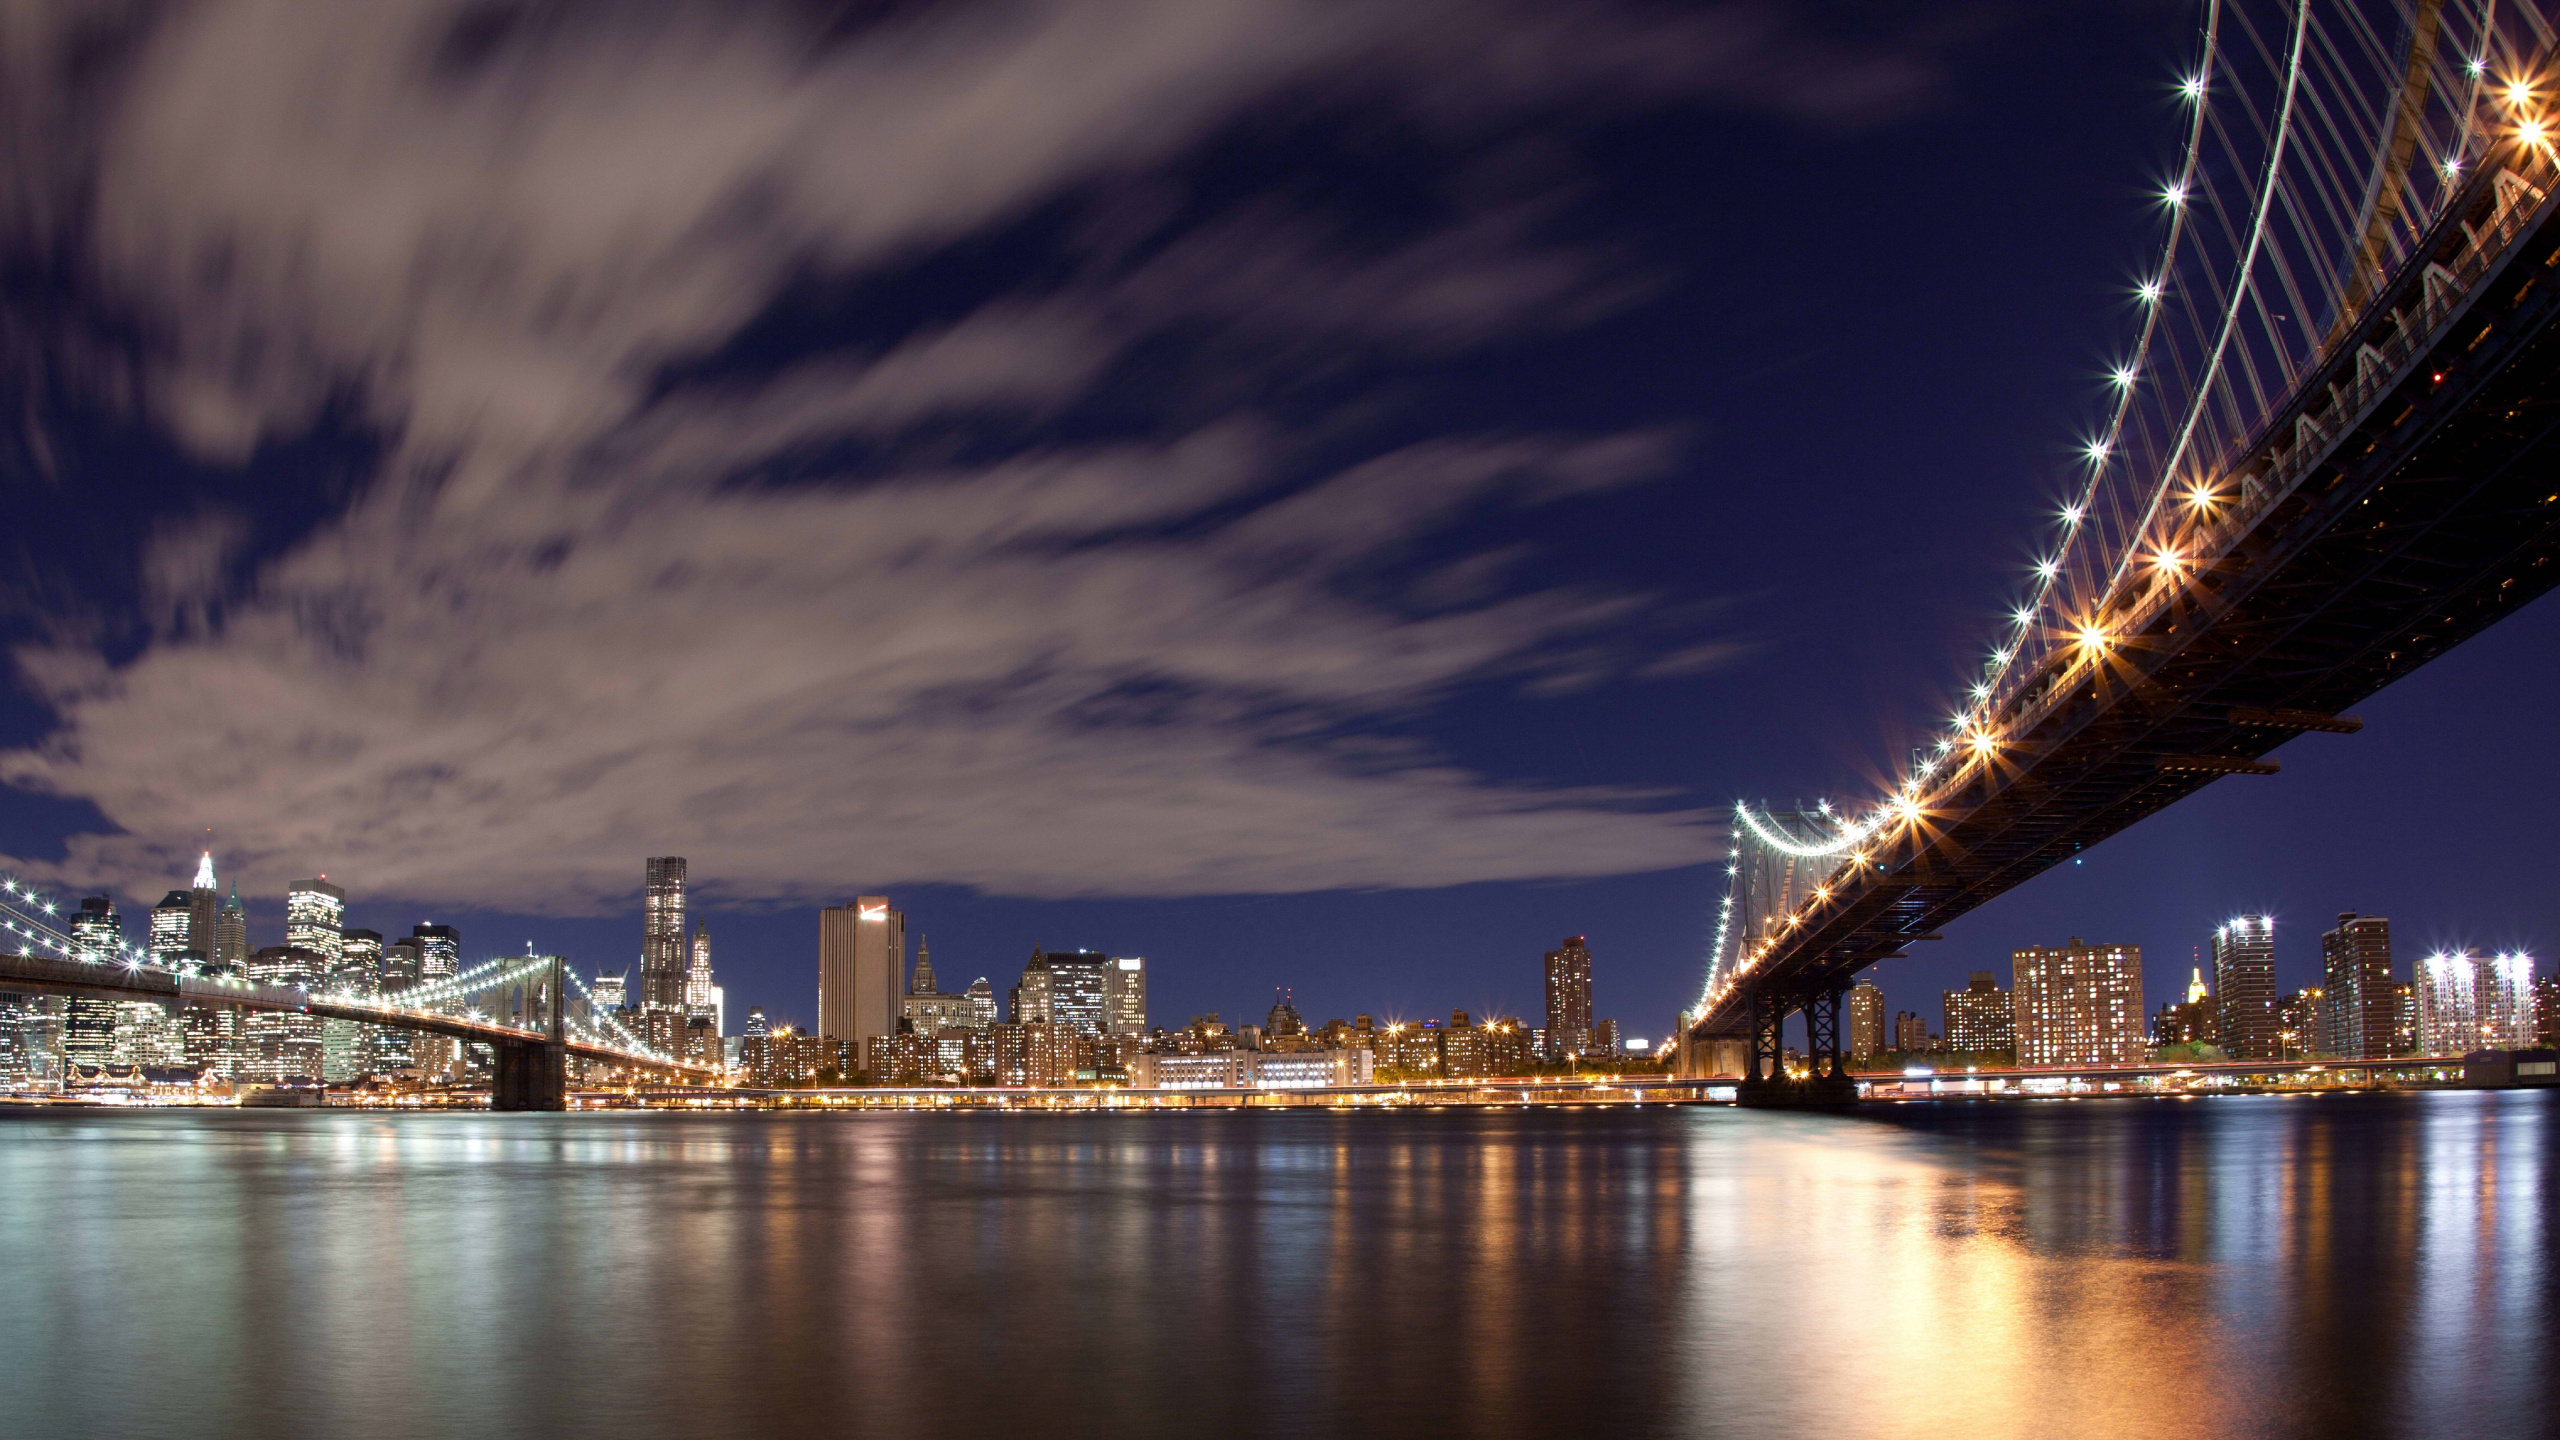 布鲁克林大桥, 城市景观, 城市, 天际线, 里程碑 壁纸 2560x1440 允许